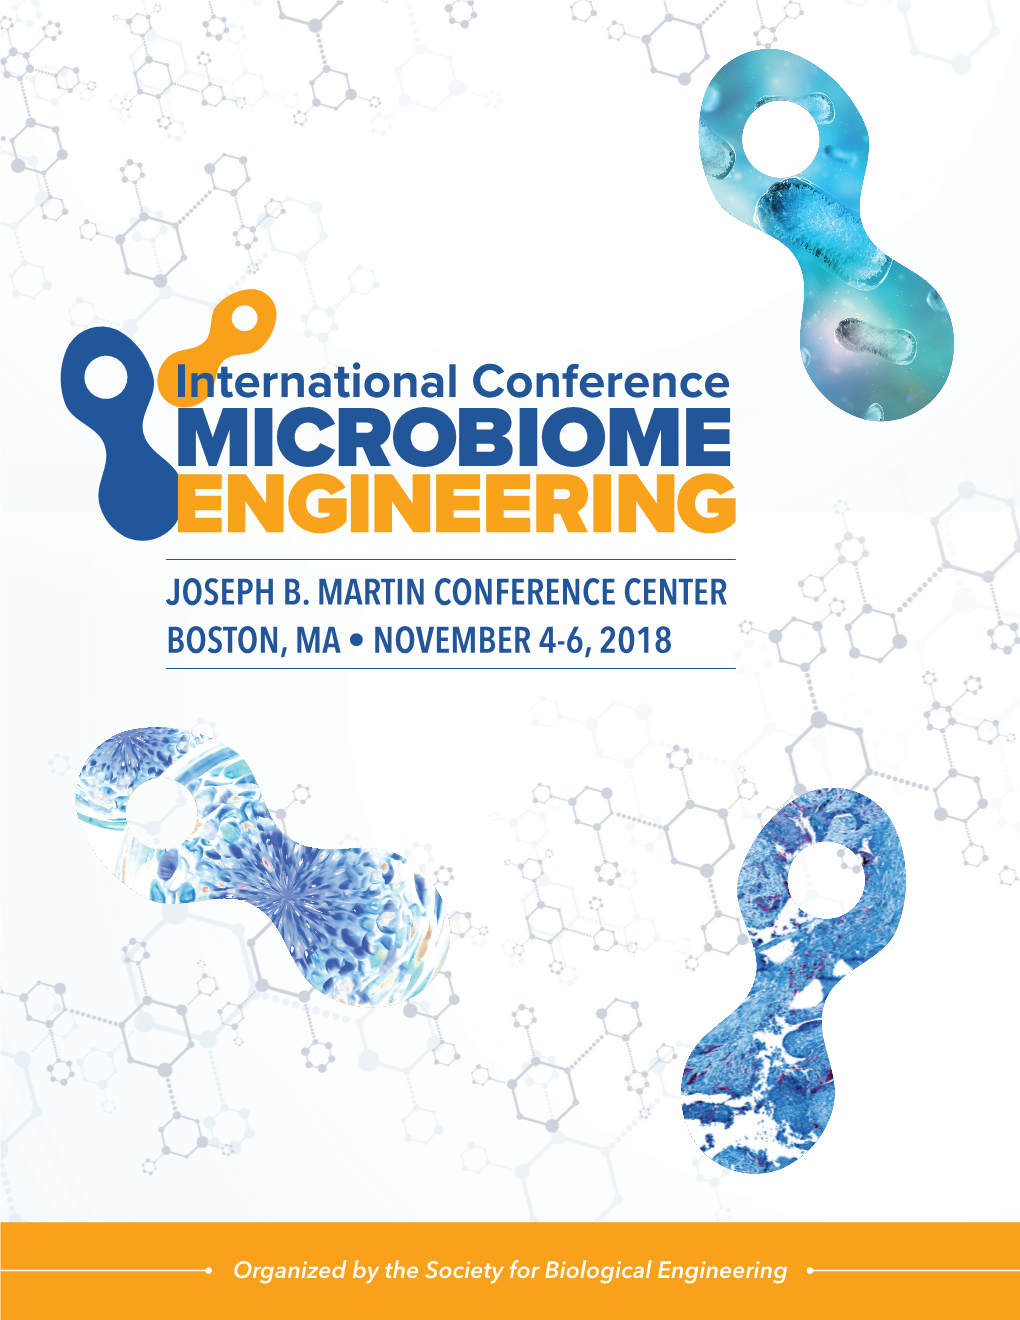 Joseph B. Martin Conference Center Boston, Ma • November 4-6, 2018